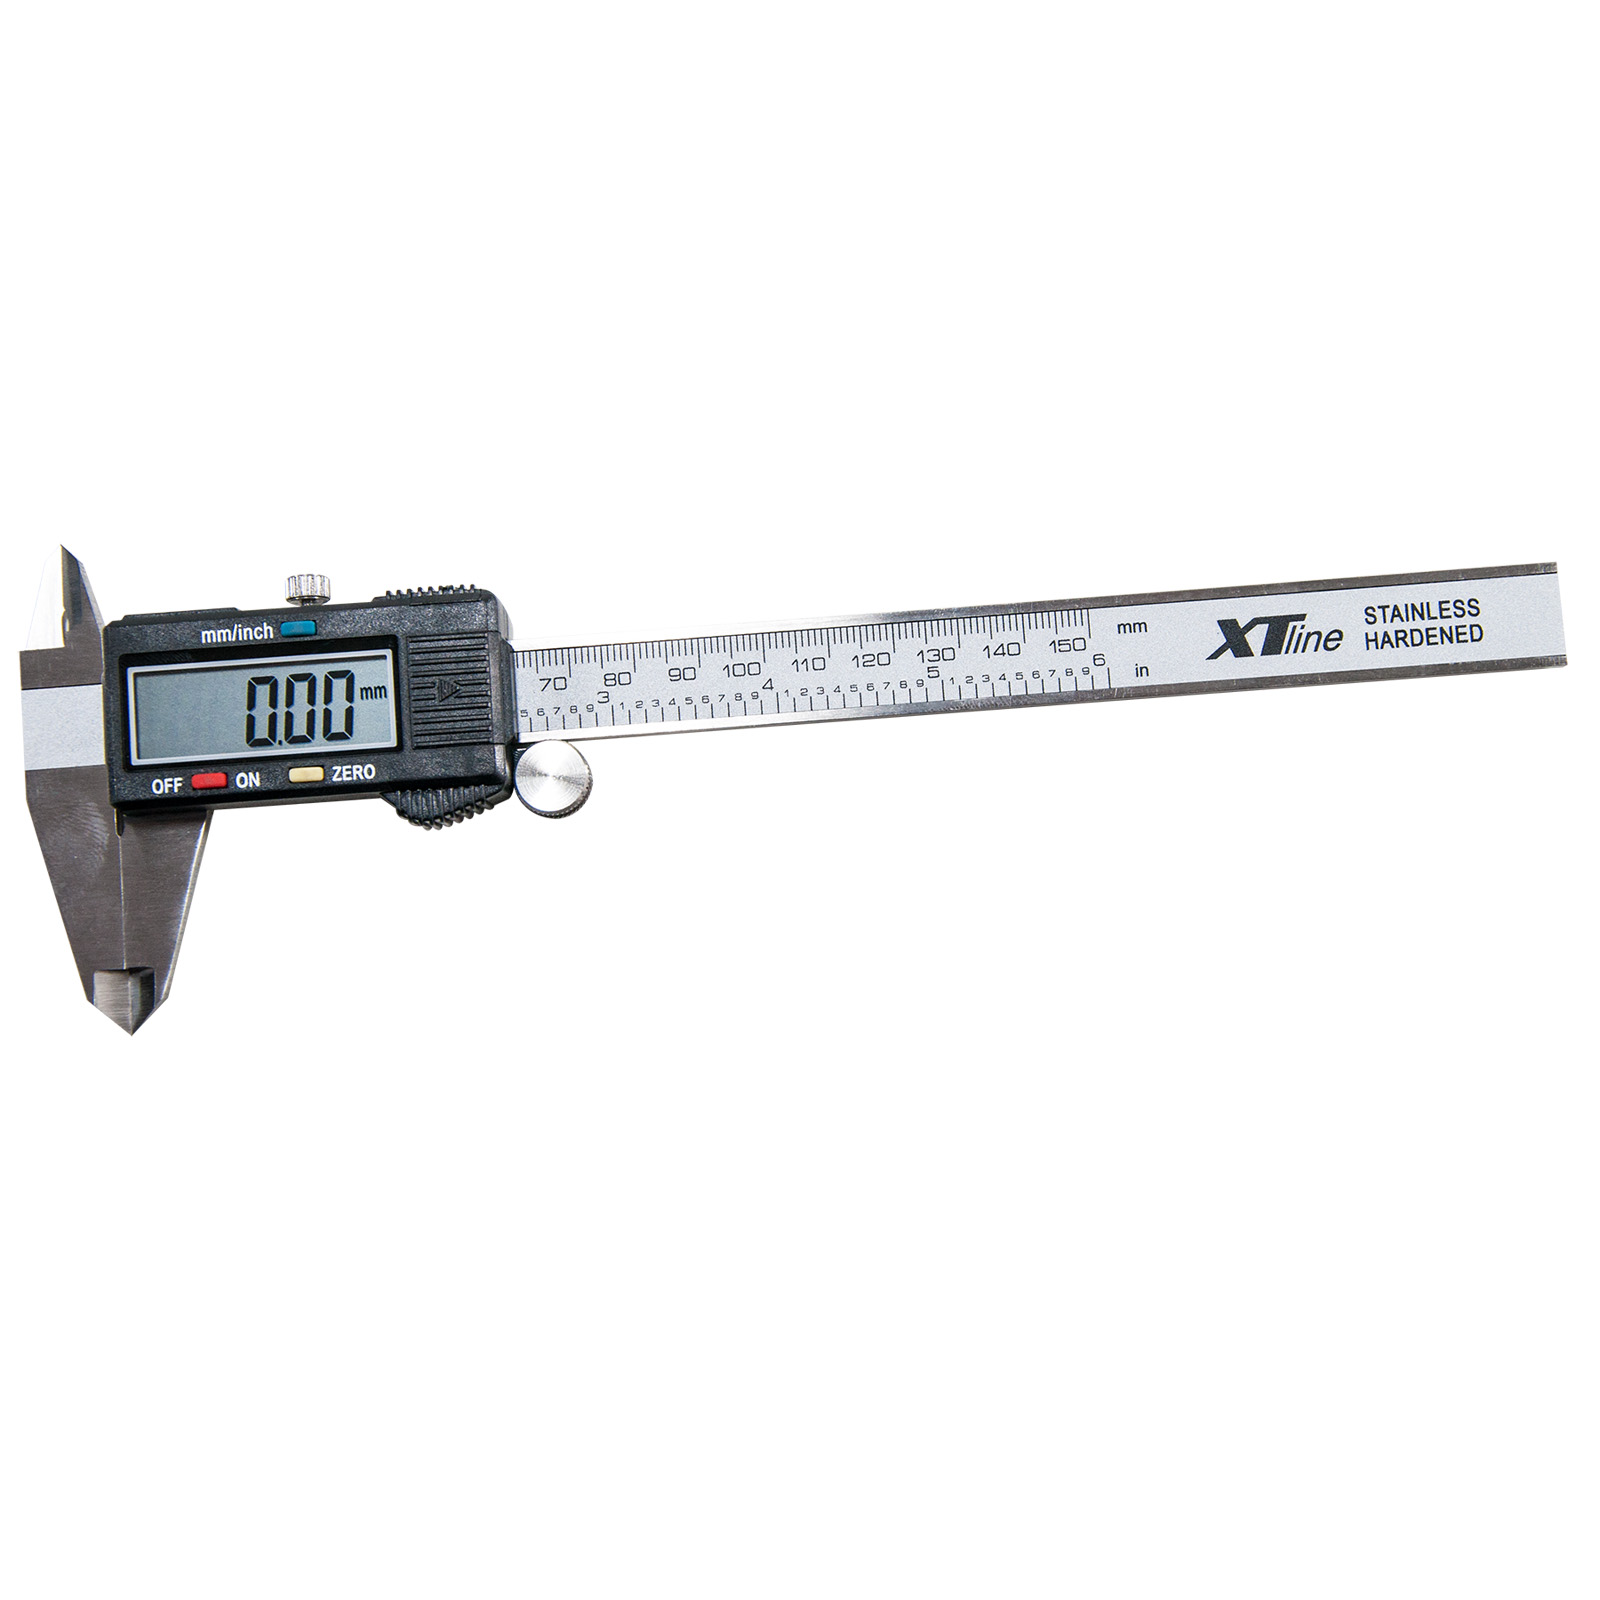 XTline XT130430 měřítko posuvné digitální | 150 mm, odchylka 0,01 mm